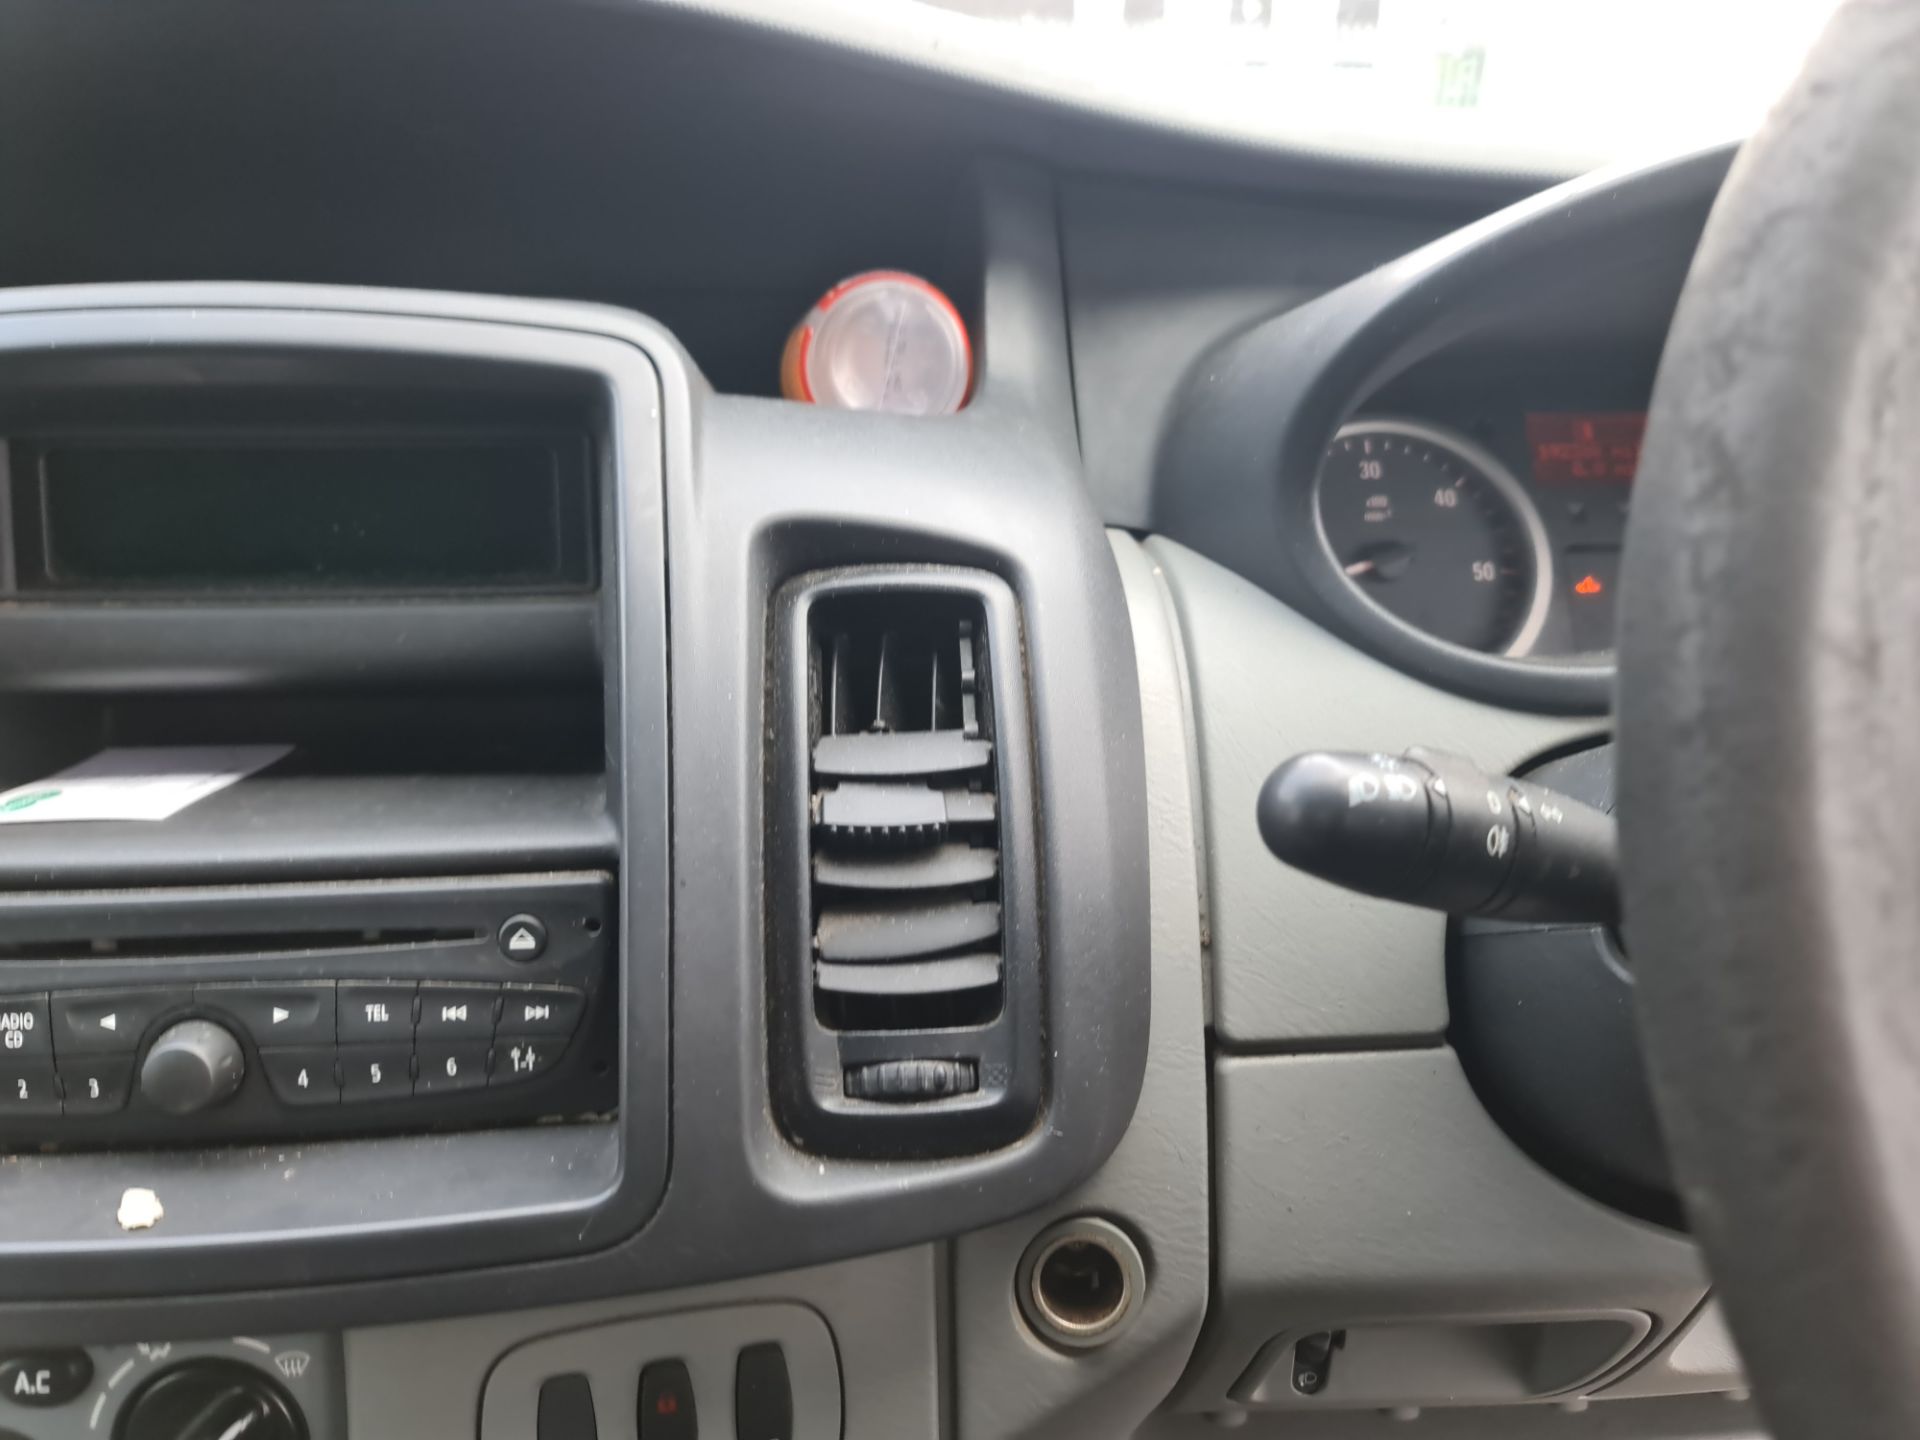 2012 Vauxhall Vivaro 2900 CDTi LWB panel van - Image 90 of 97